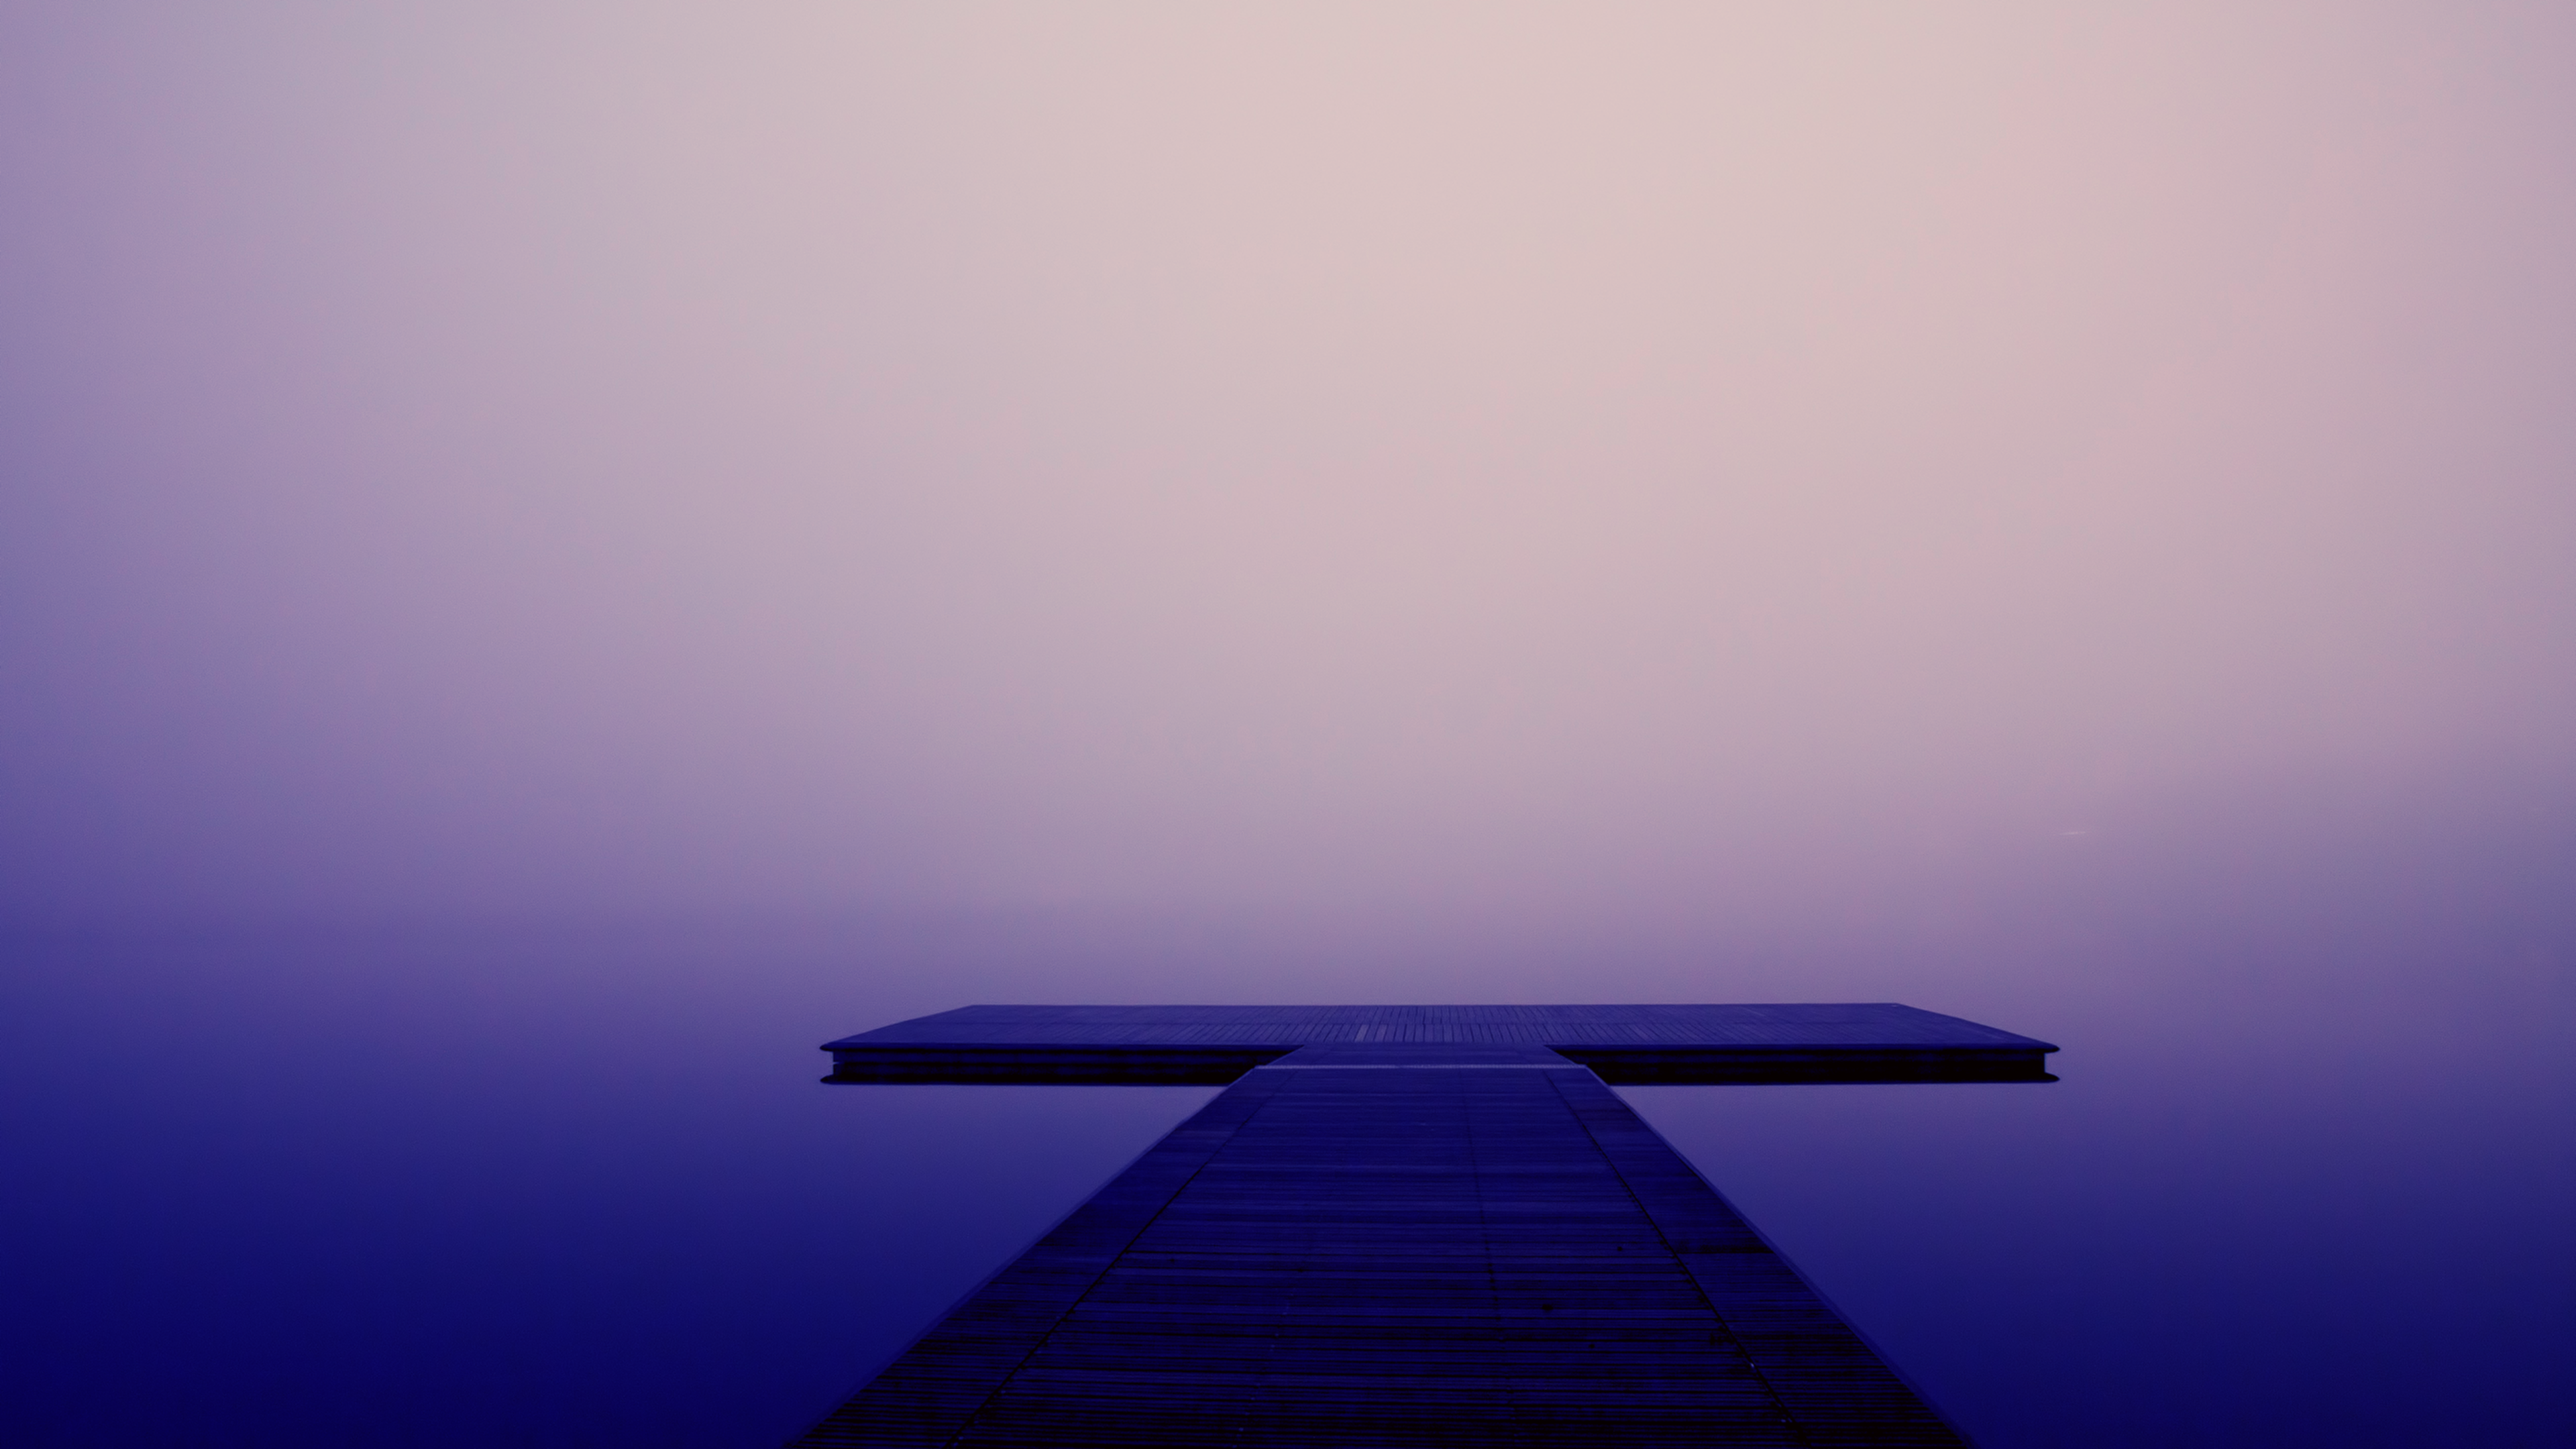 General 3840x2160 footbridge nature white blue water sky violet wood pier